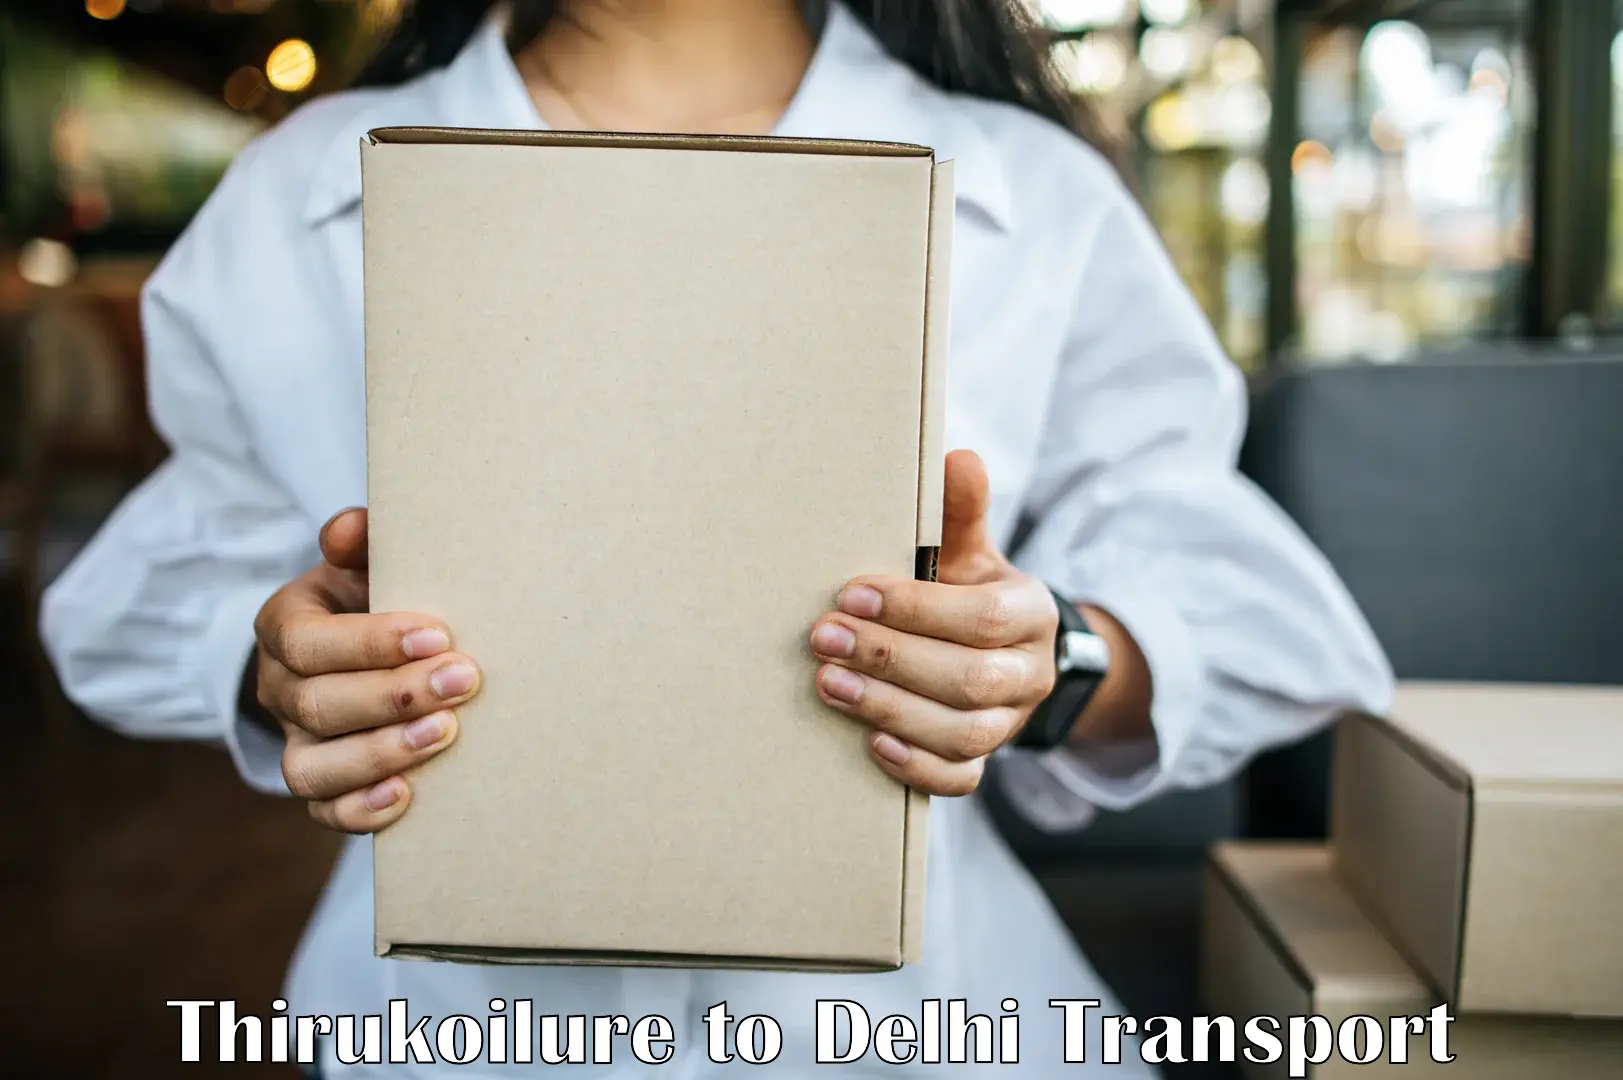 Door to door transport services Thirukoilure to IIT Delhi